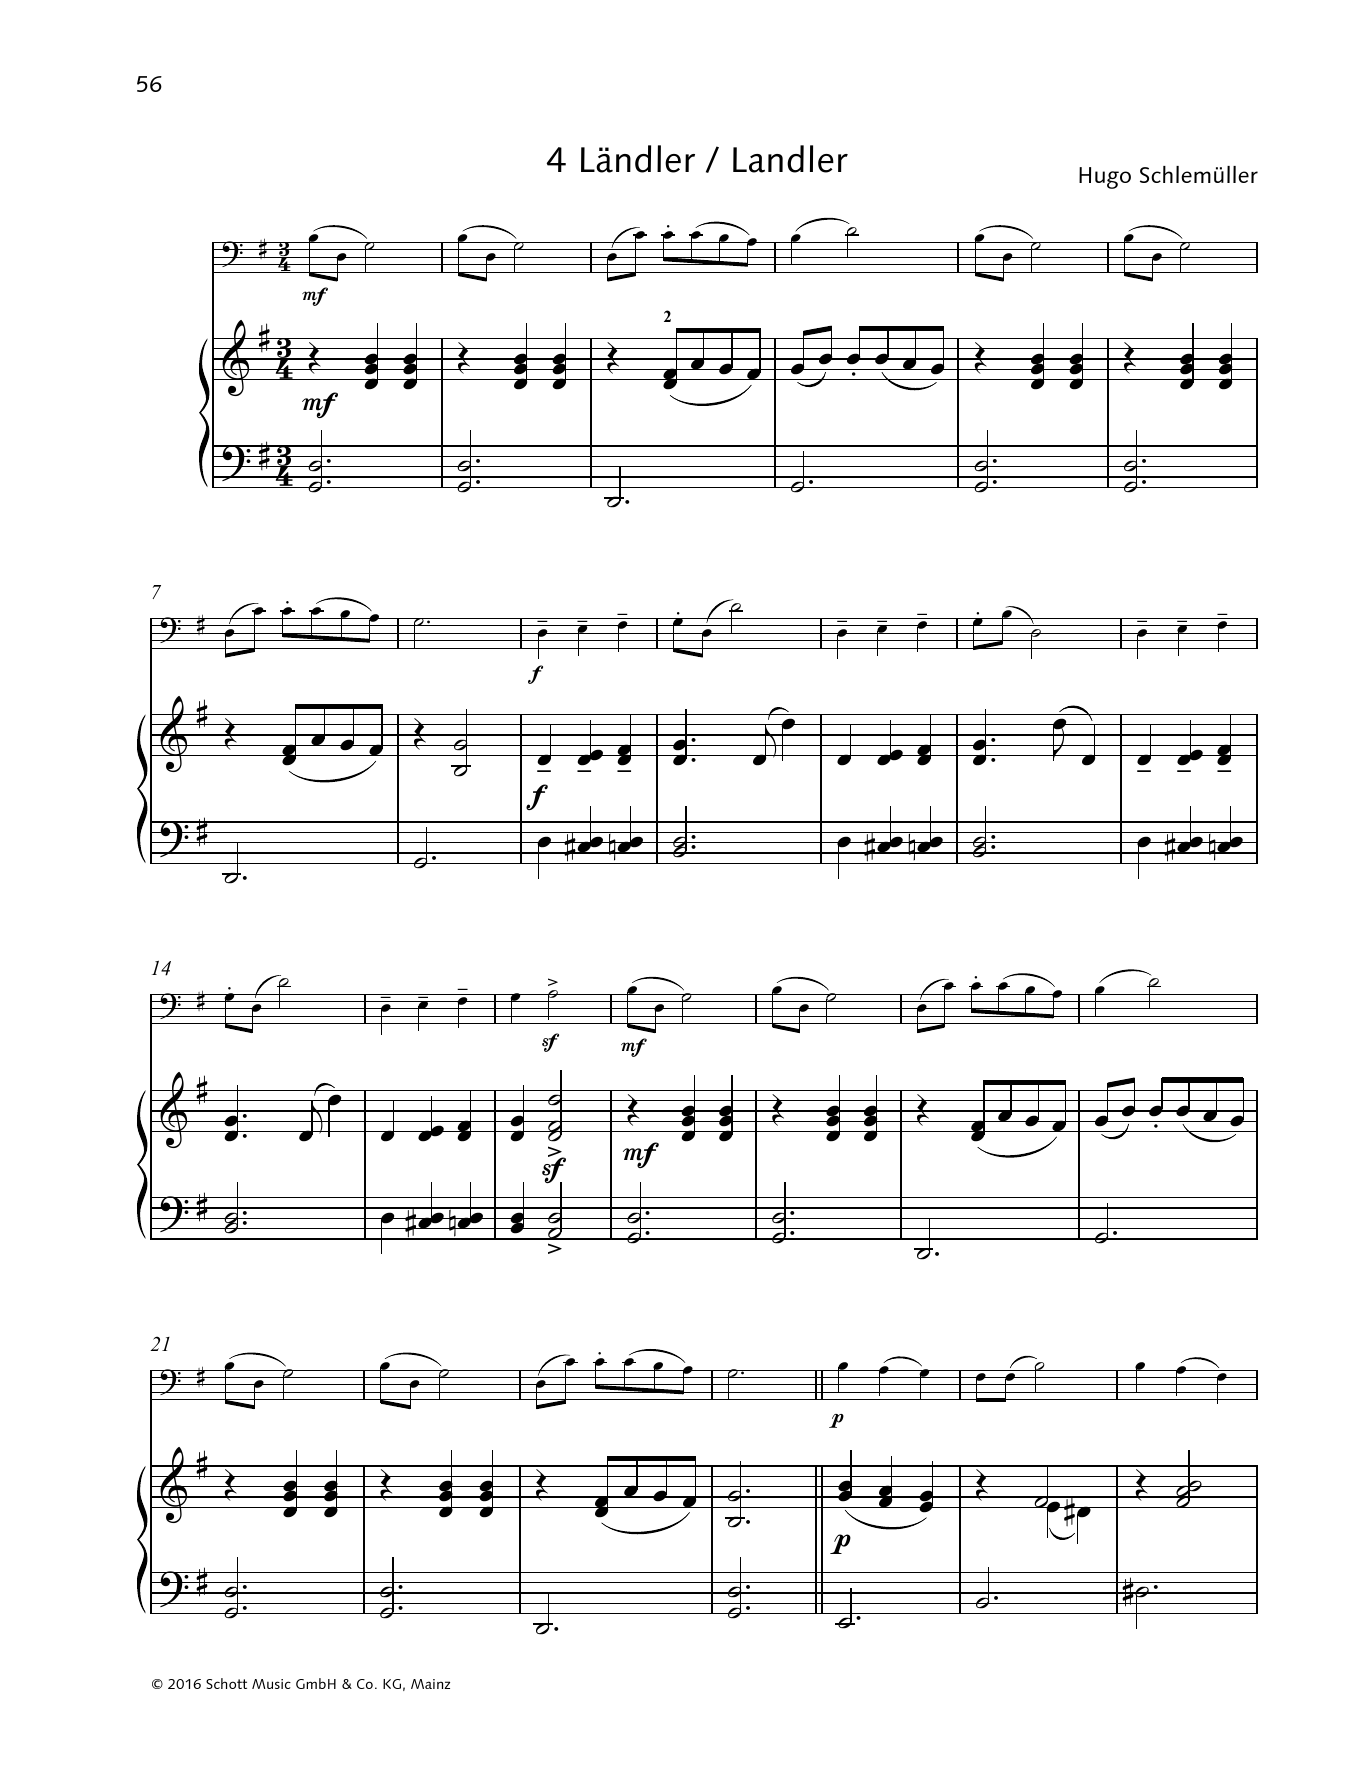 Hugo Schlemüller Ländler Sheet Music Notes & Chords for String Solo - Download or Print PDF